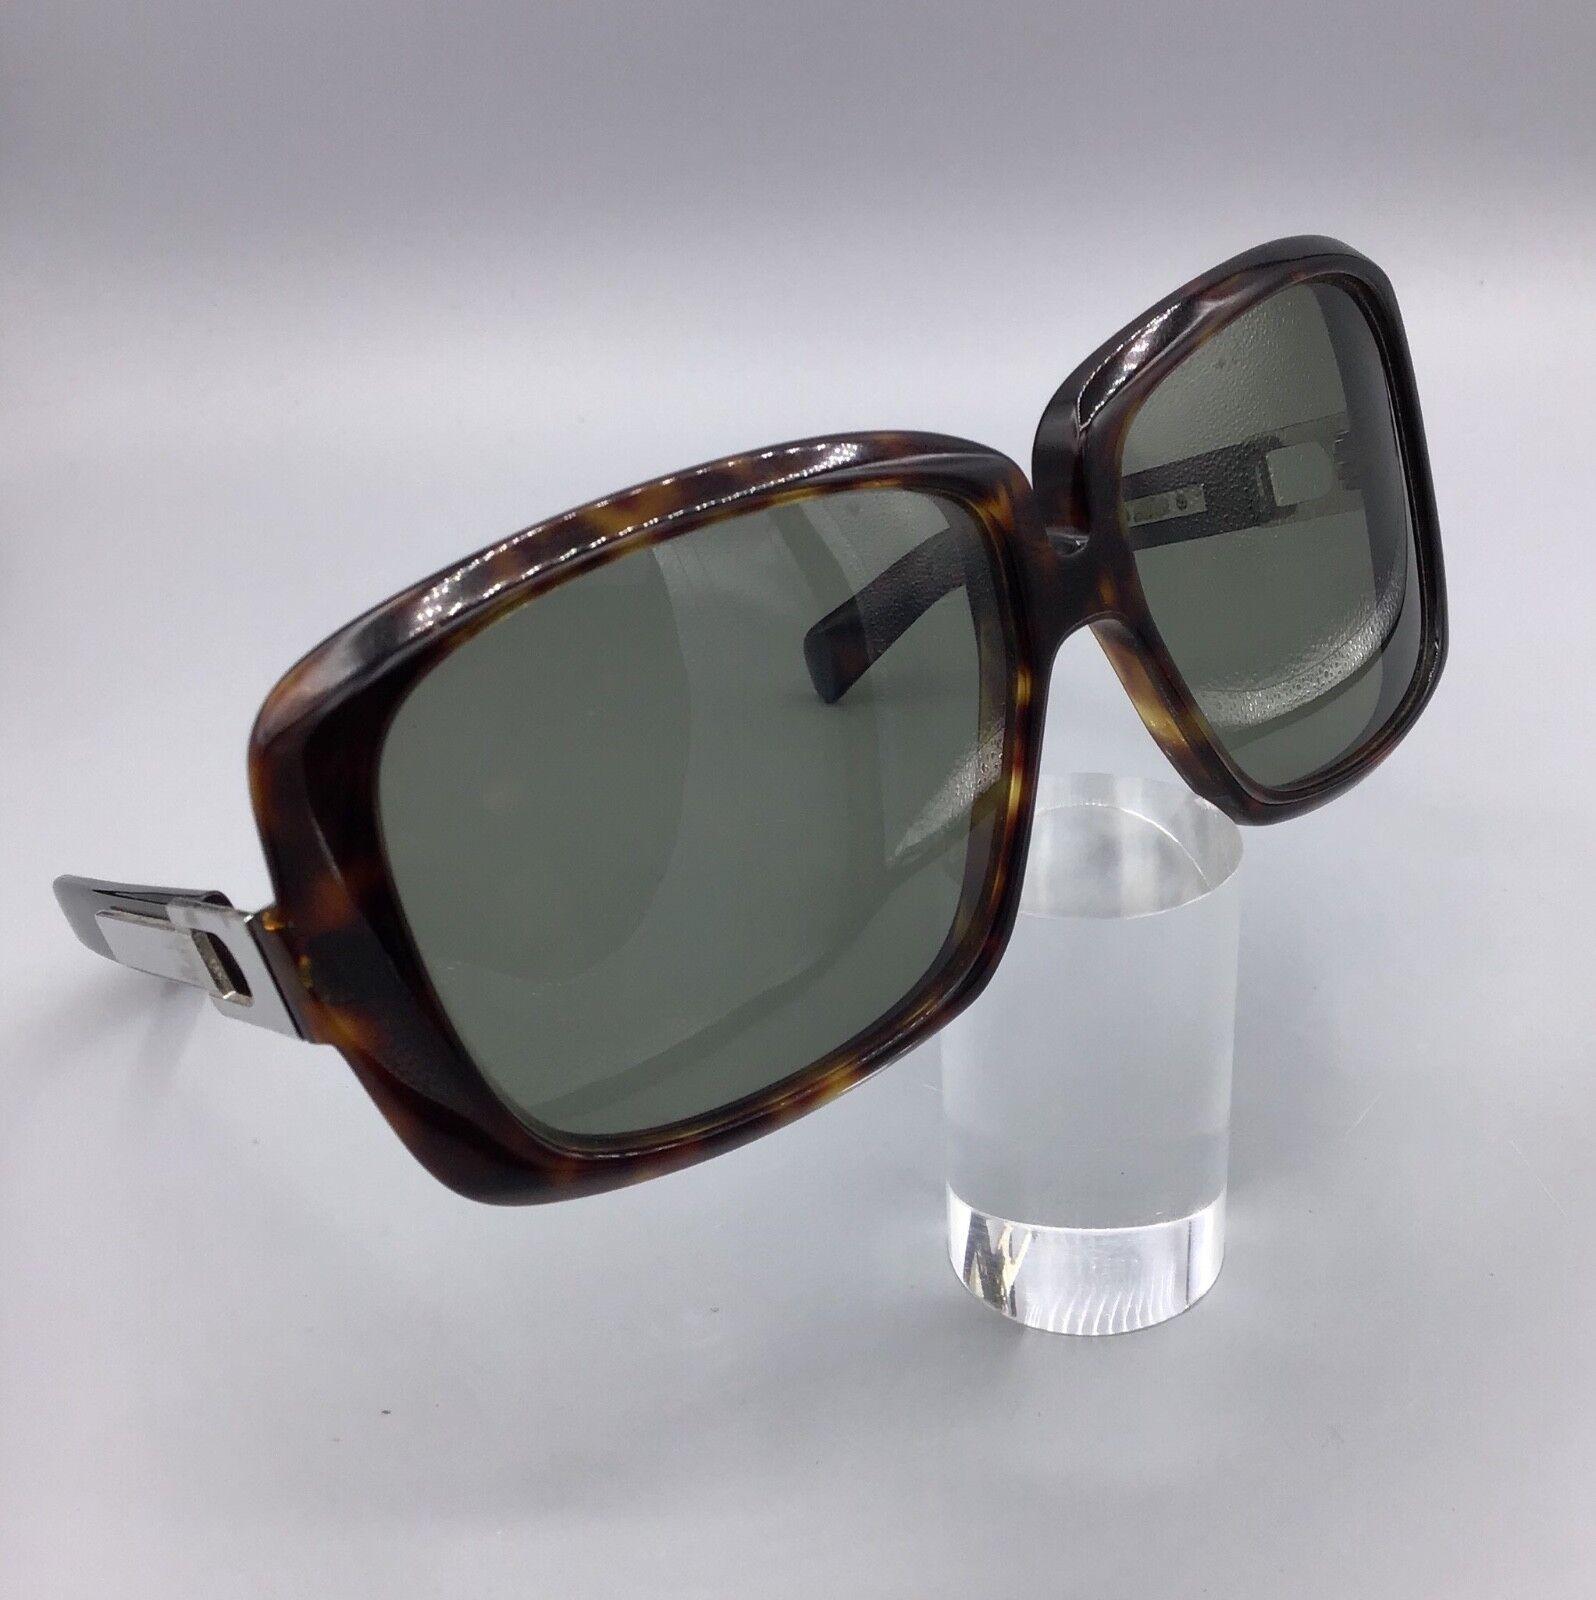 Silhouette Occhiale da Sole model 780 Vintage Sunglasses